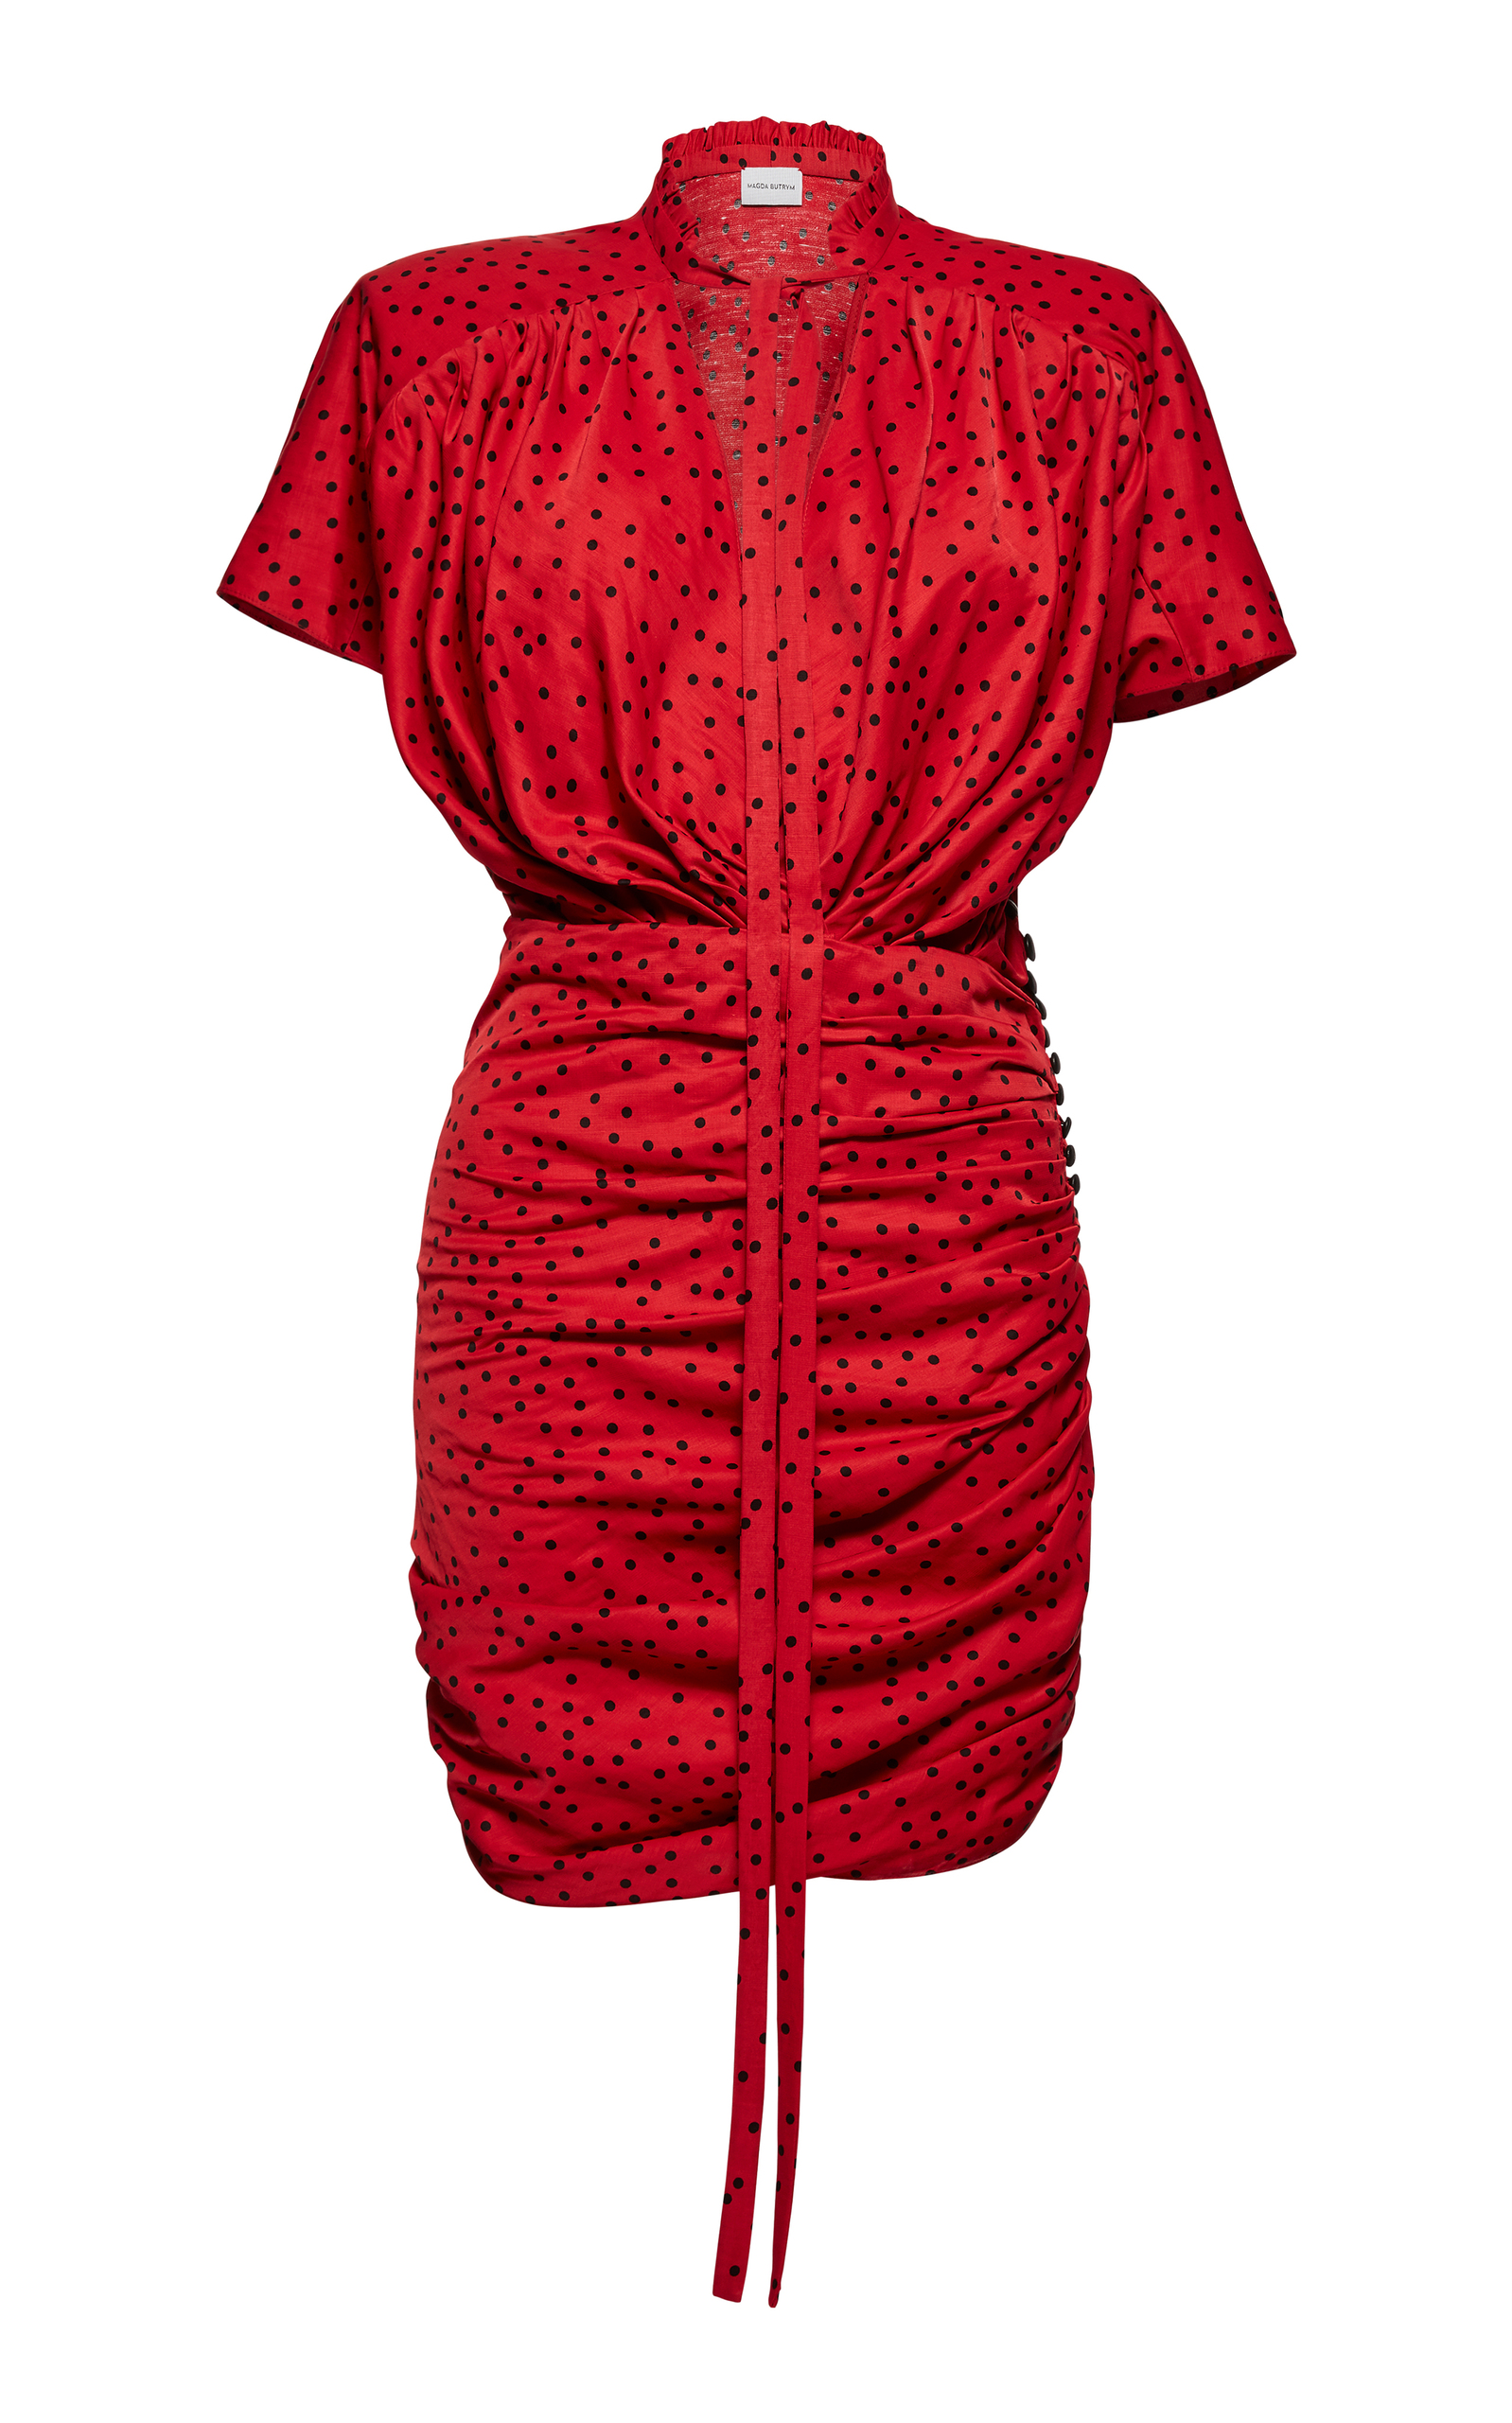 magda butrym red dress